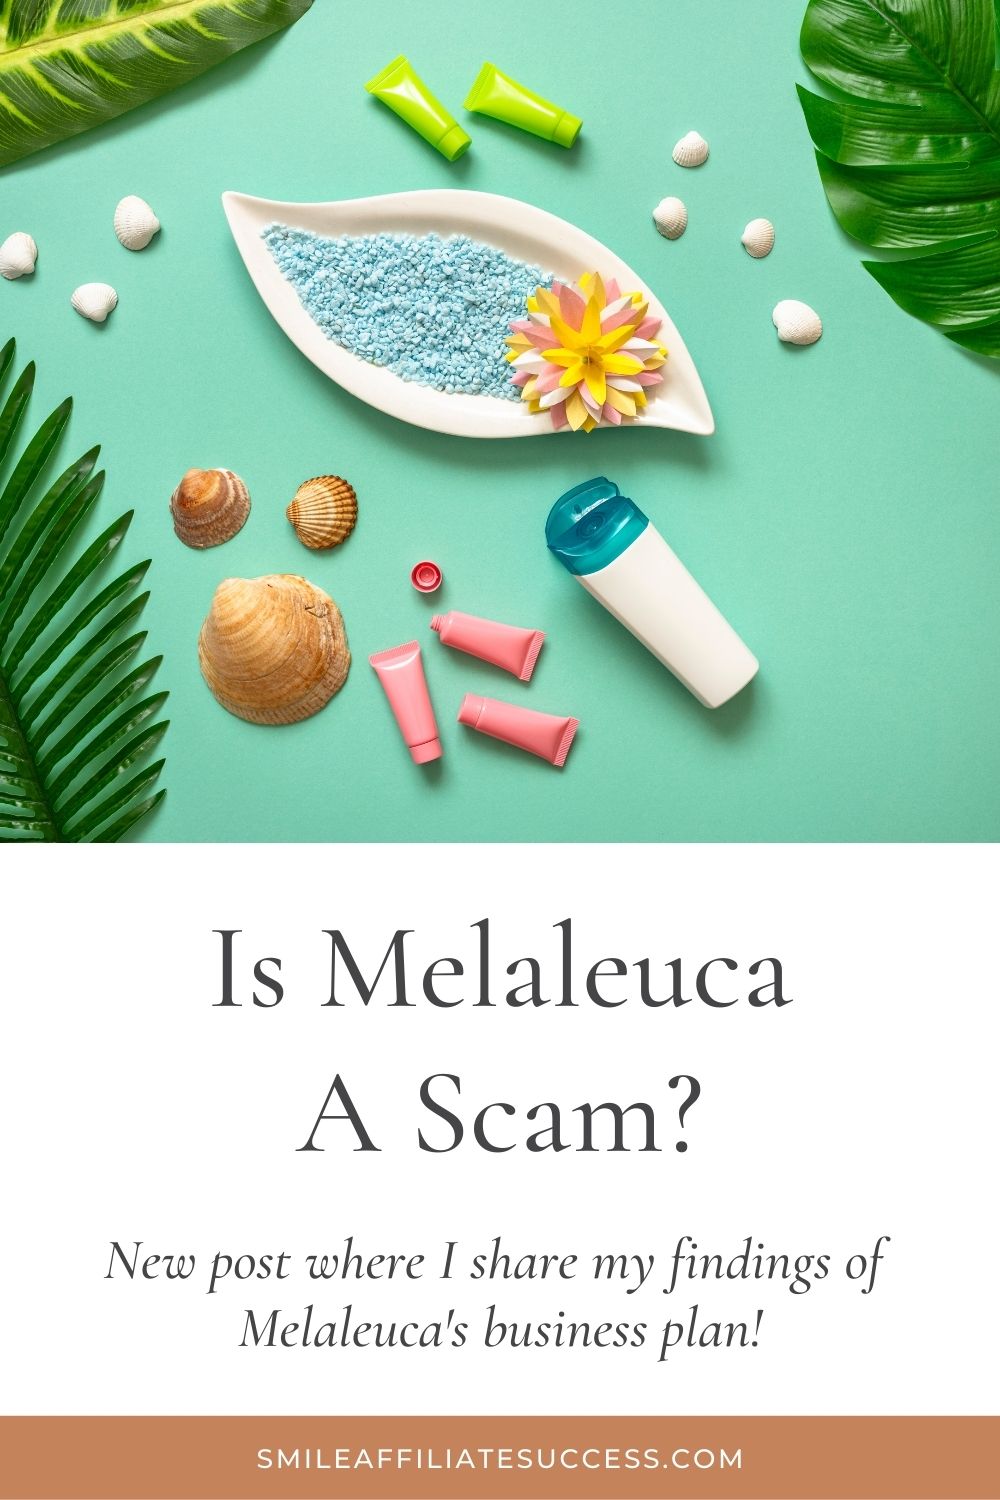 Is Melaleuca A Scam?